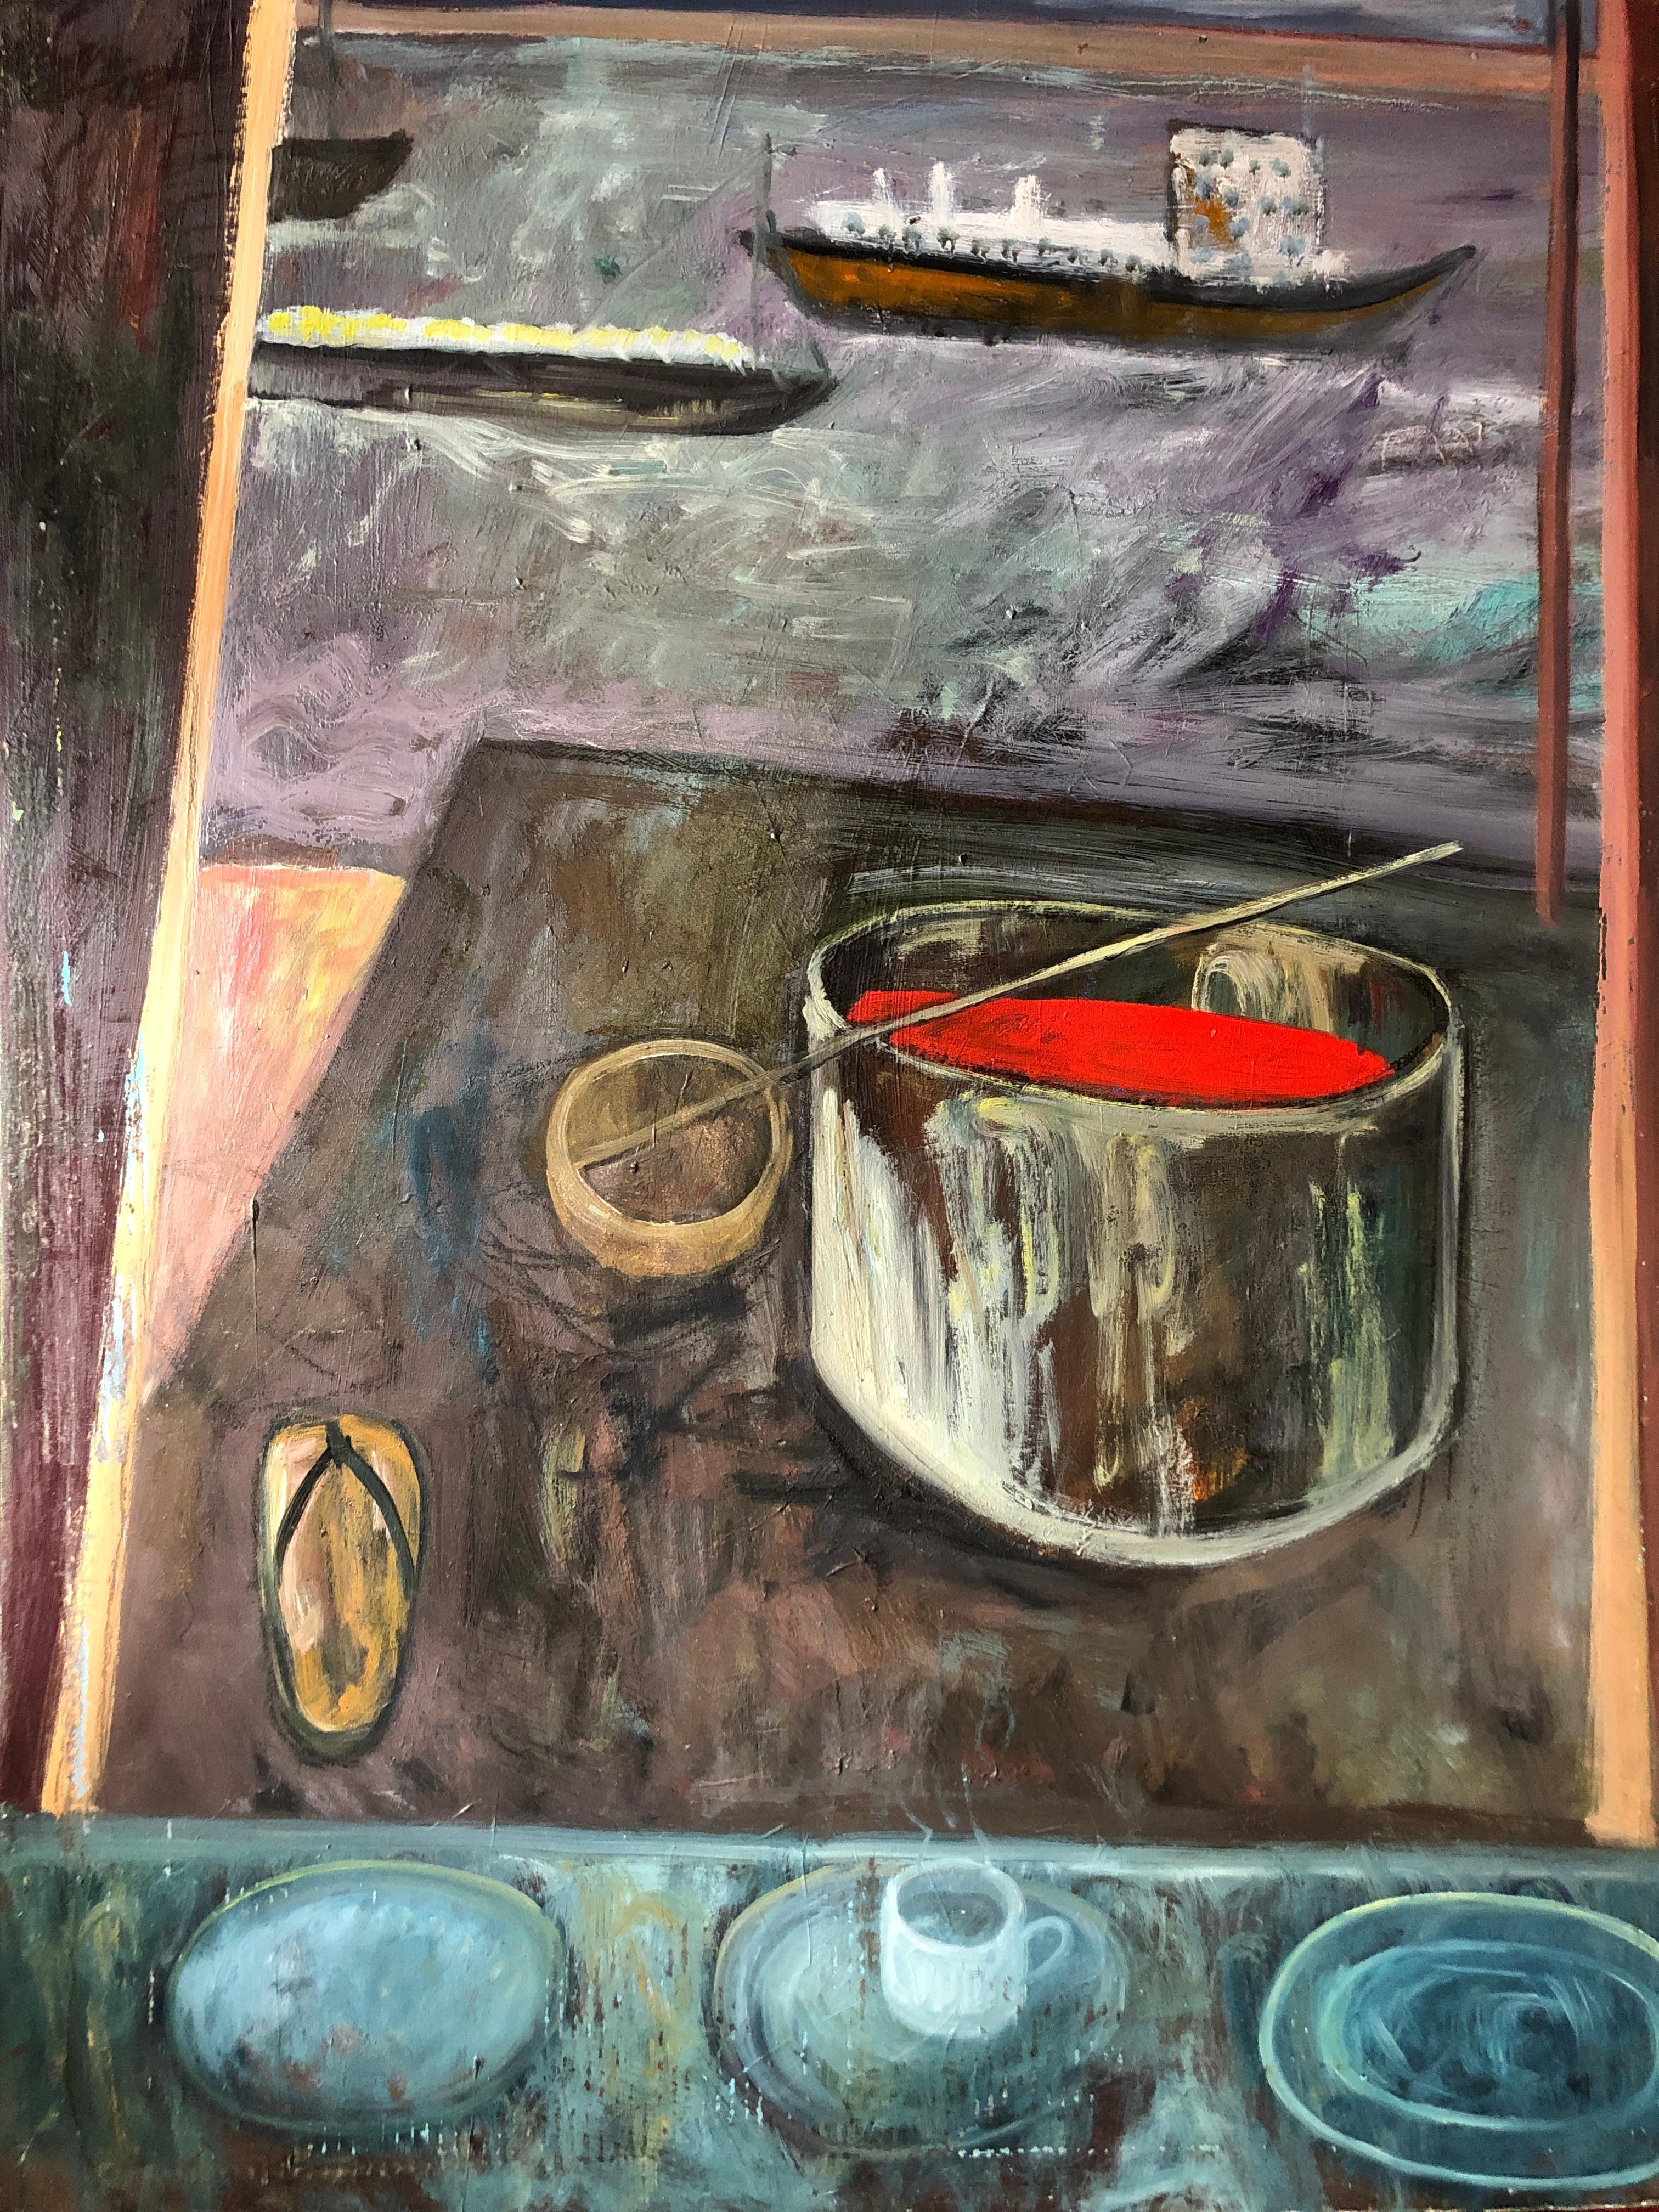 Grand artiste de la scène de paysage de la baie de San Francisco « Two Ships Passing » (Deux navires traversant la baie) - Modernisme américain Painting par Trung Quoc Tran